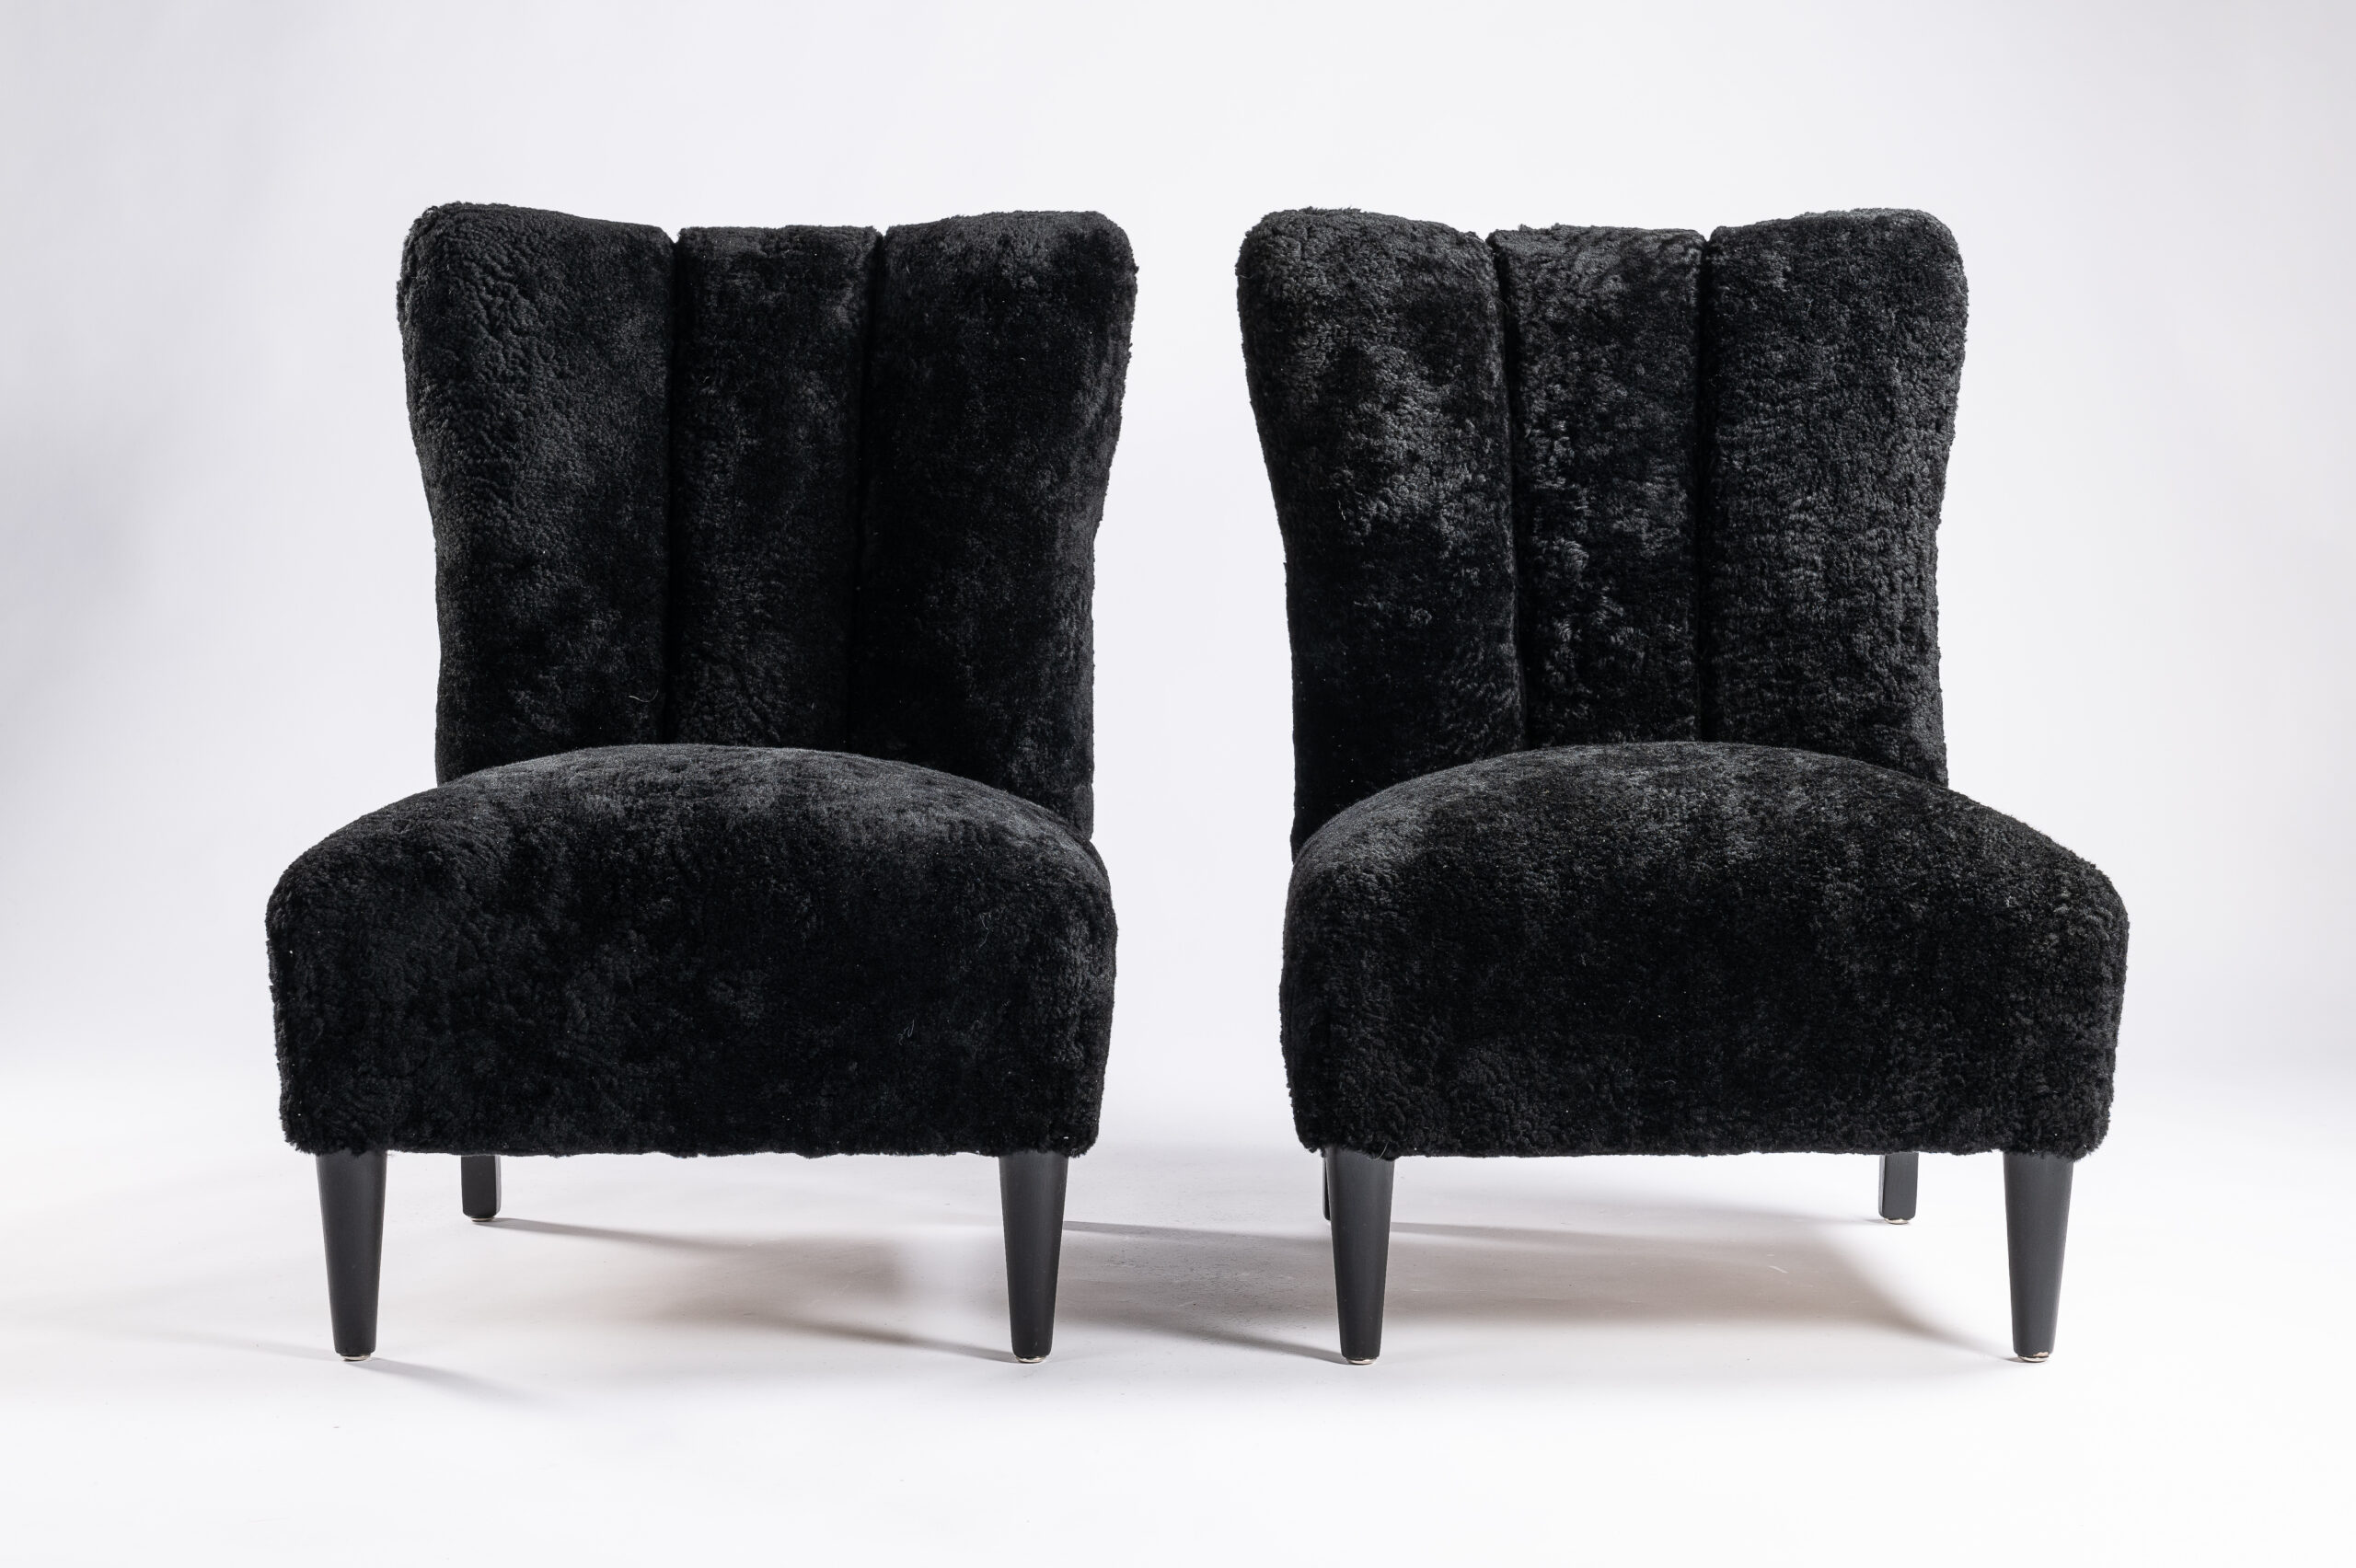 Paire de petits fauteuils noirs scandinaves sans accoudoirs